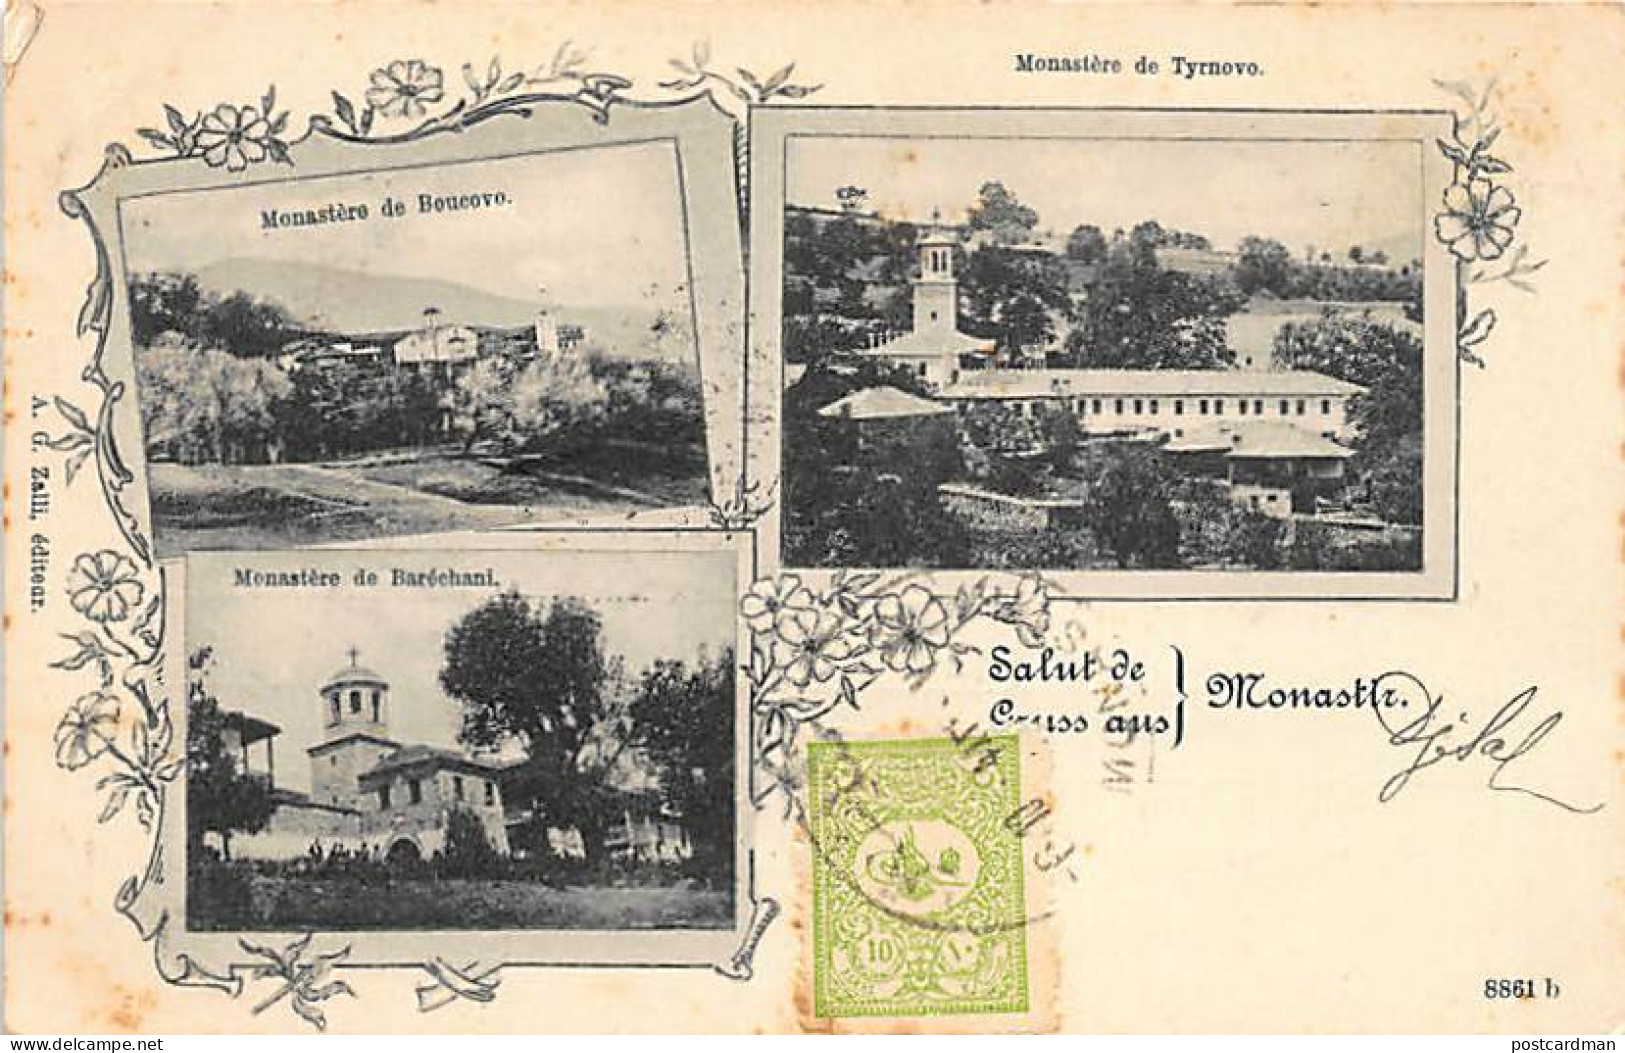 Macedonia - Gruss Aus Monastir - Bukovo Monastery - Baresani Monastery - Tirnovo Monastery - SEE STAMPS AND POSTMARKS -  - Macedonia Del Norte